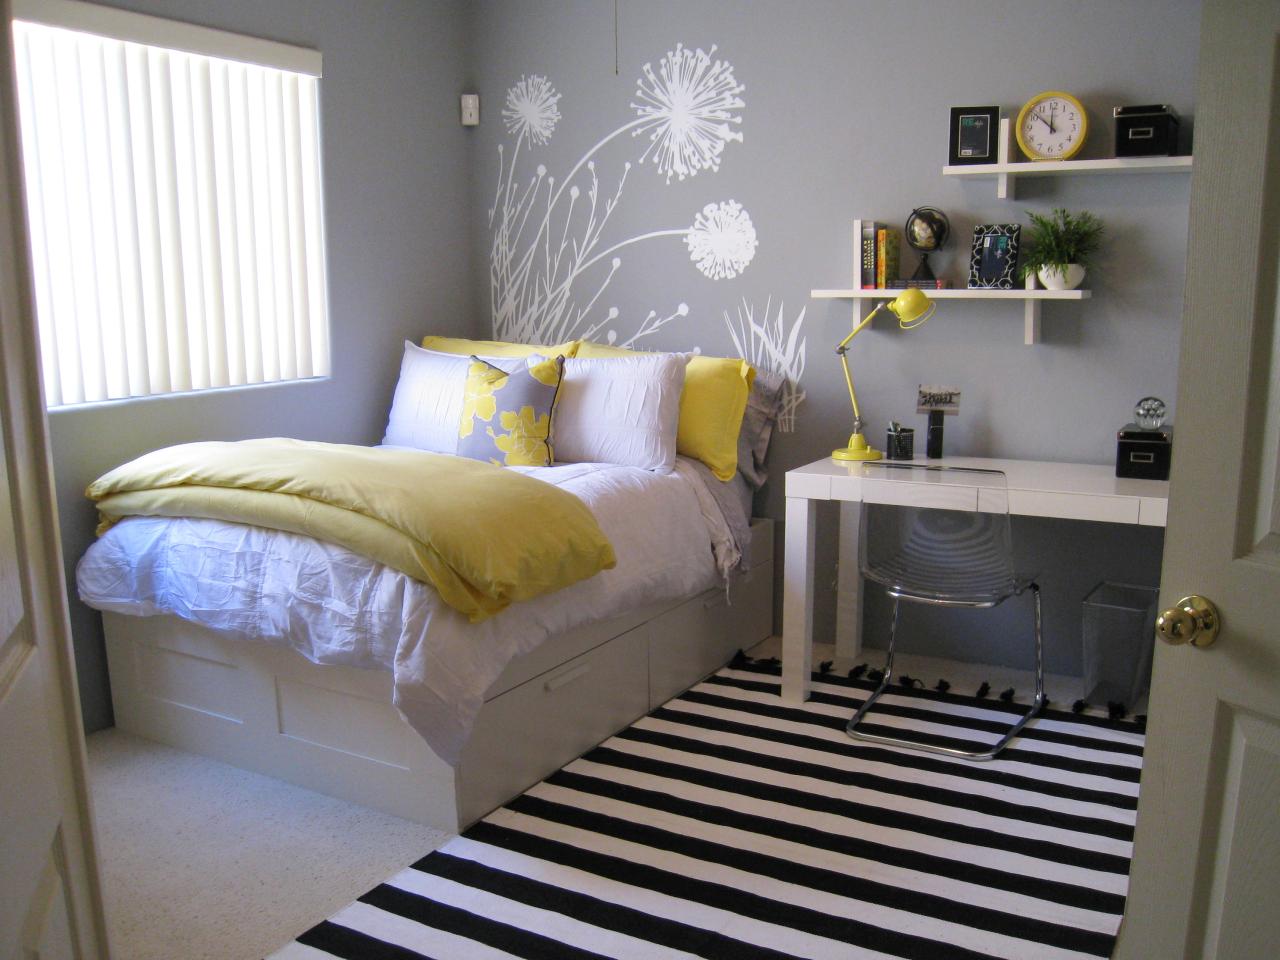 déco originale tête de lit moderne design chambre ado idée déco draps tapis zebra cool